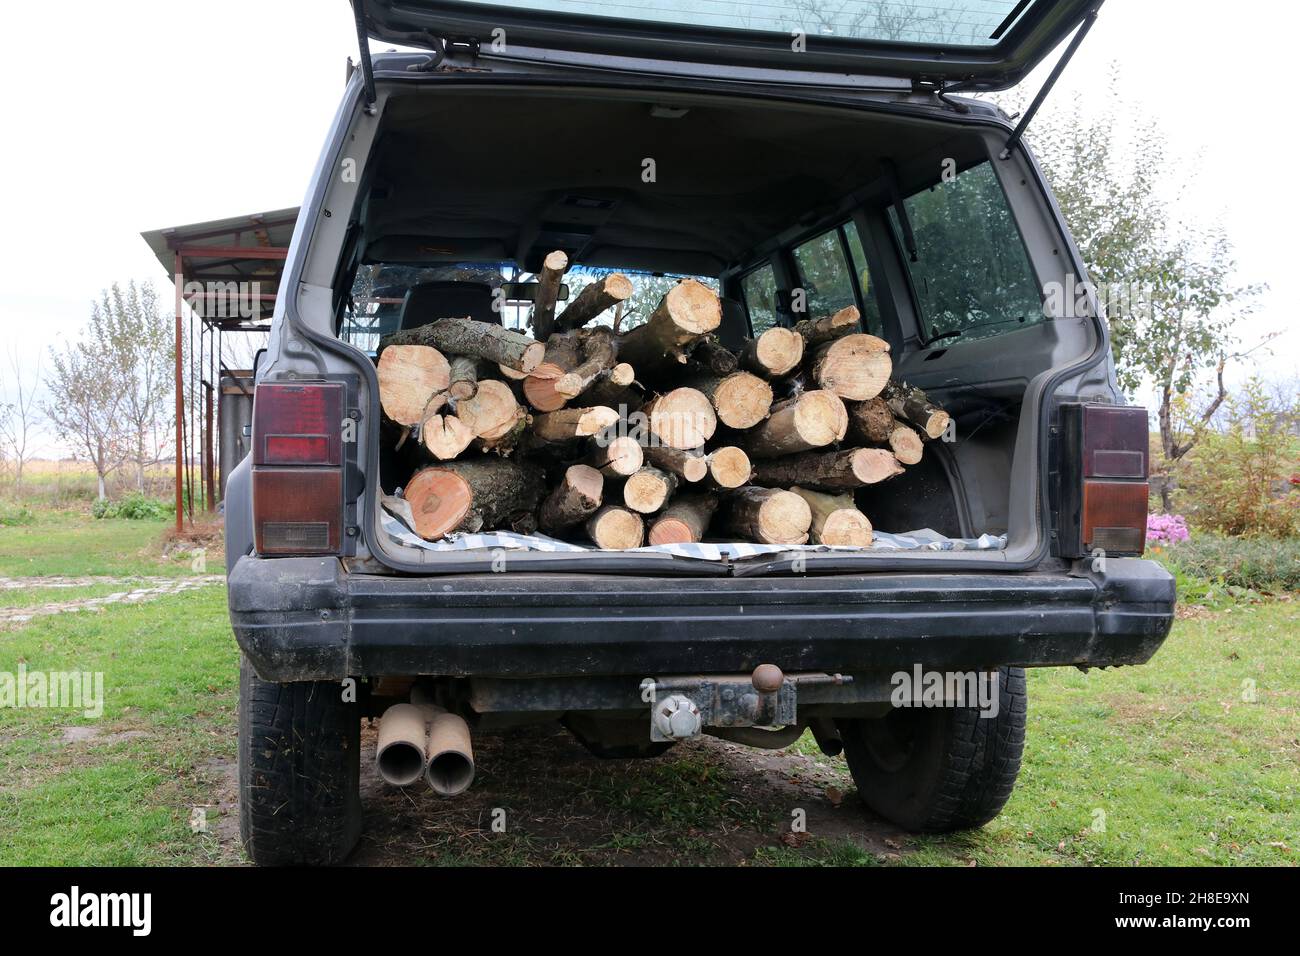 Une voiture de tourisme chargée de bois de chauffage.Préparation de bois de chauffage pour l'hiver. Banque D'Images